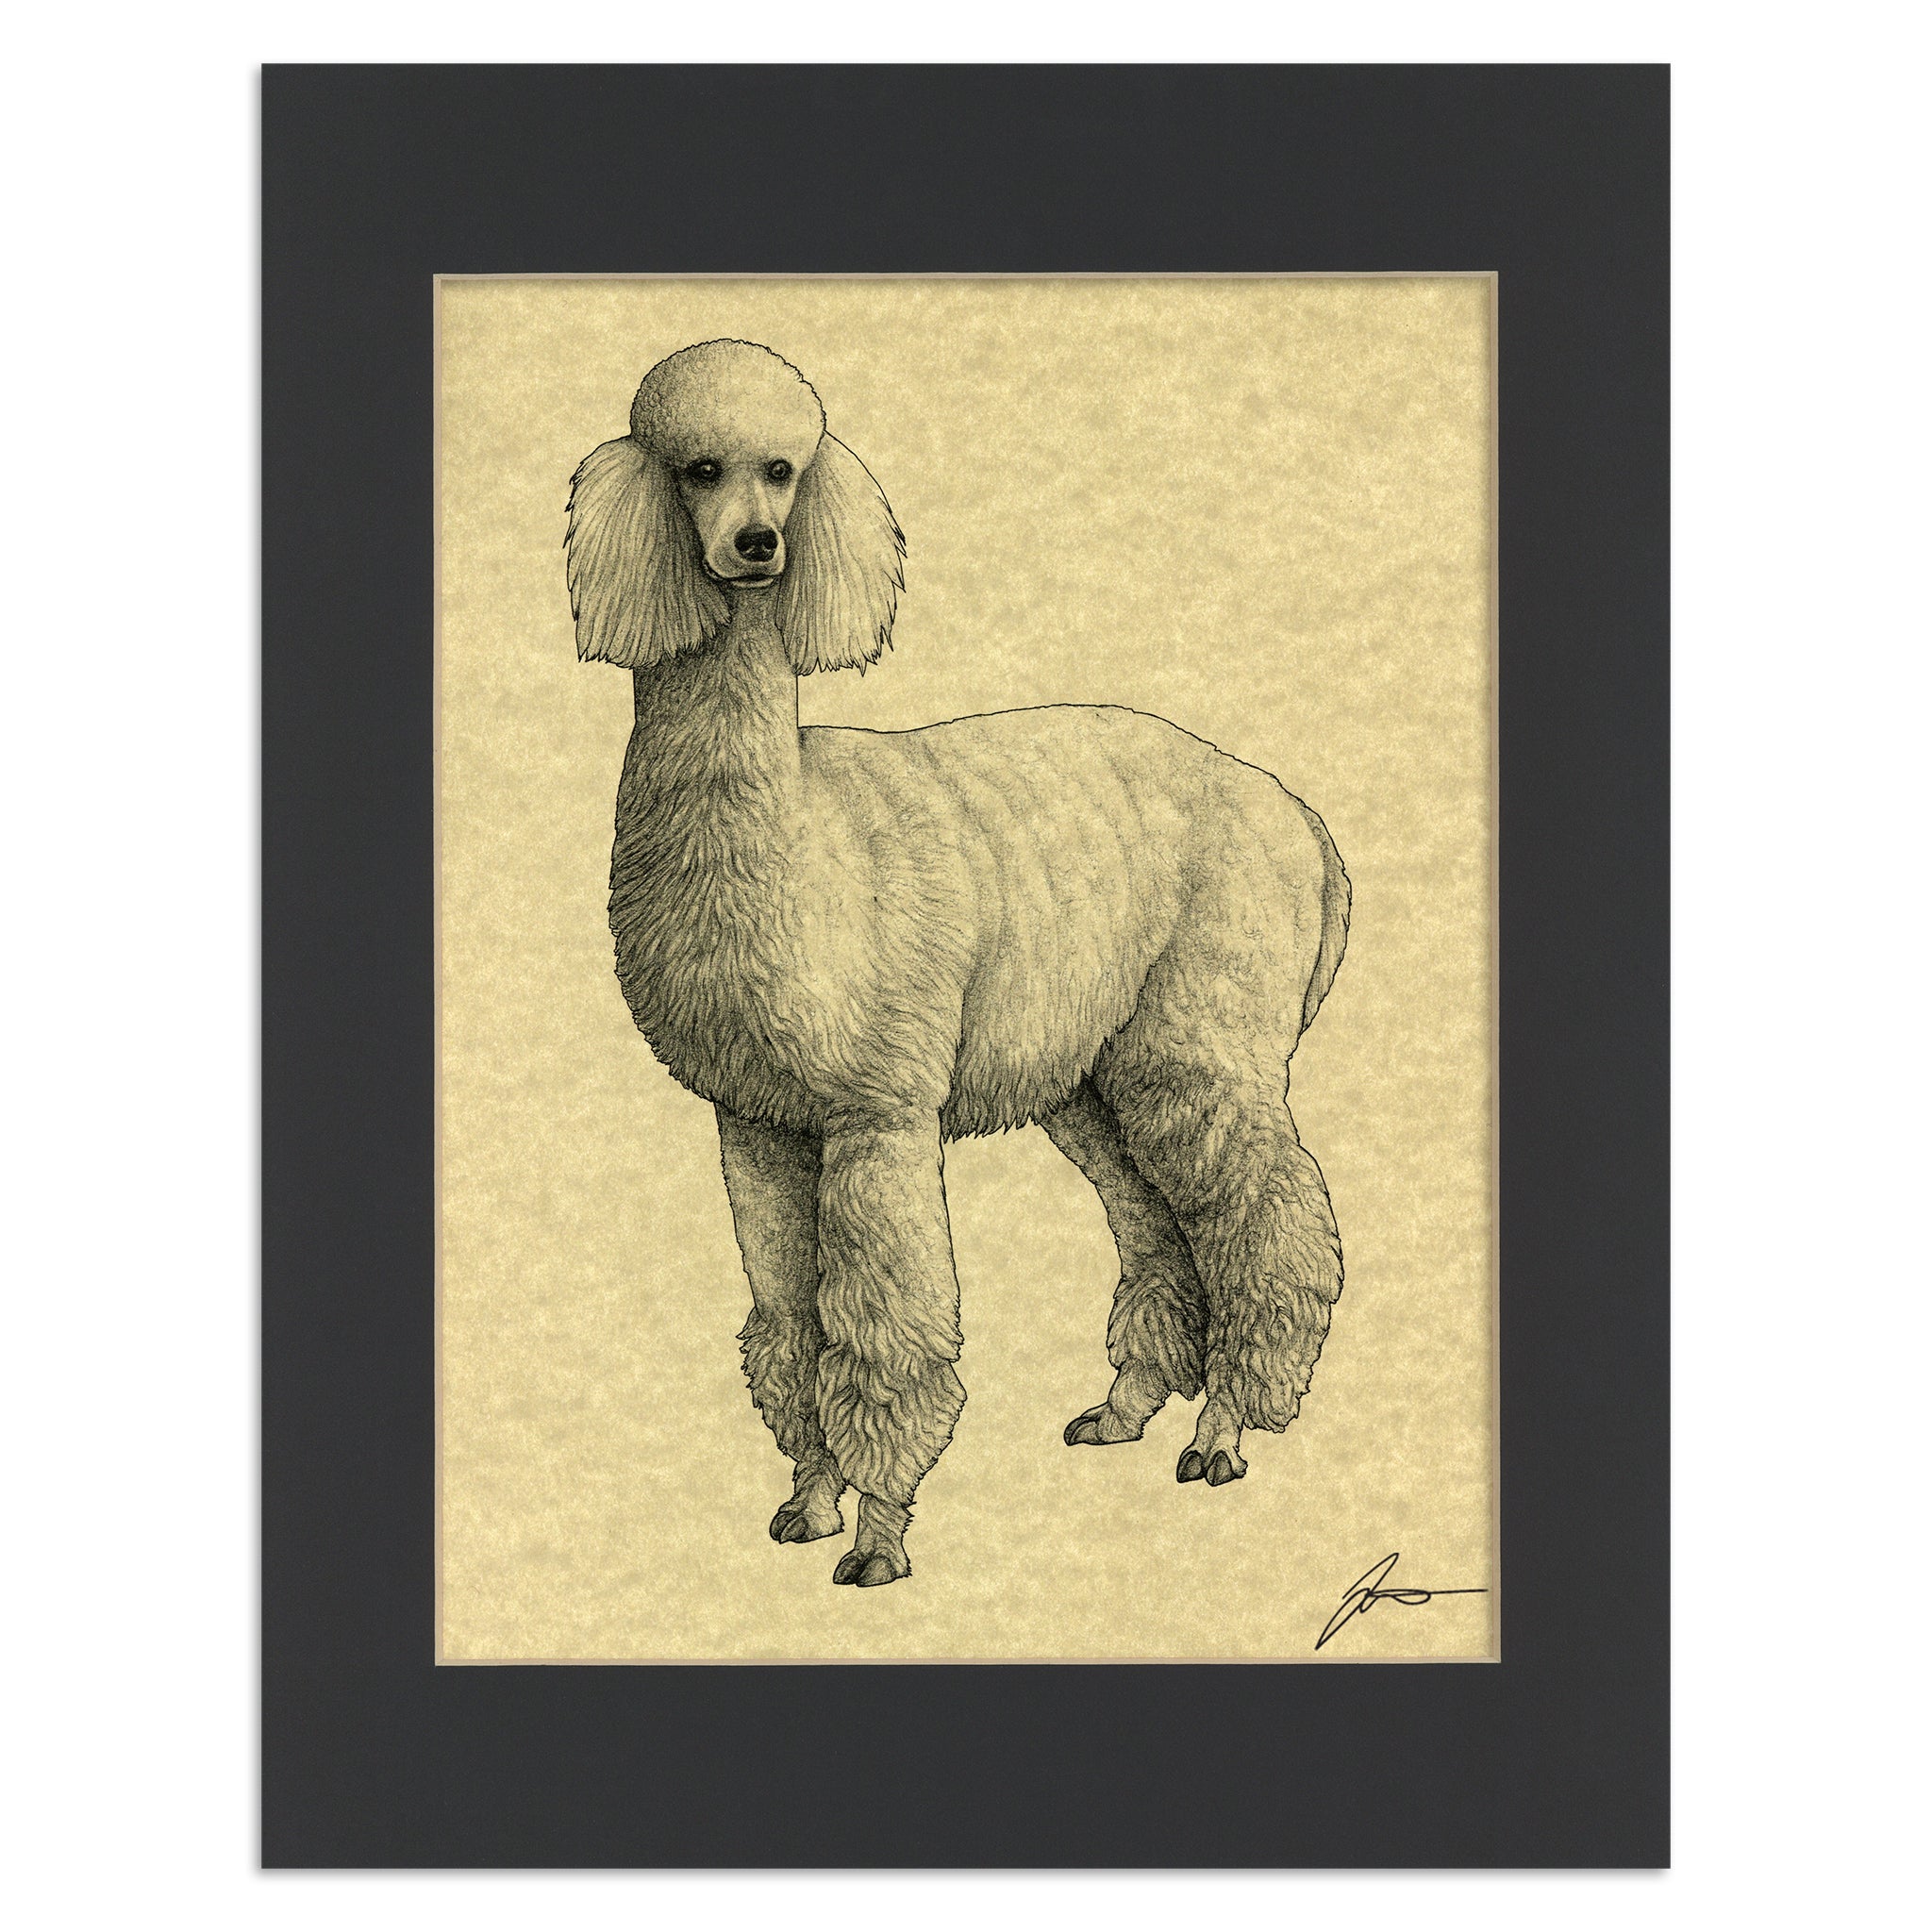 Alpacapoodle | Alpaca + Poodle Hybrid Animal | 11x14" Parchment Print